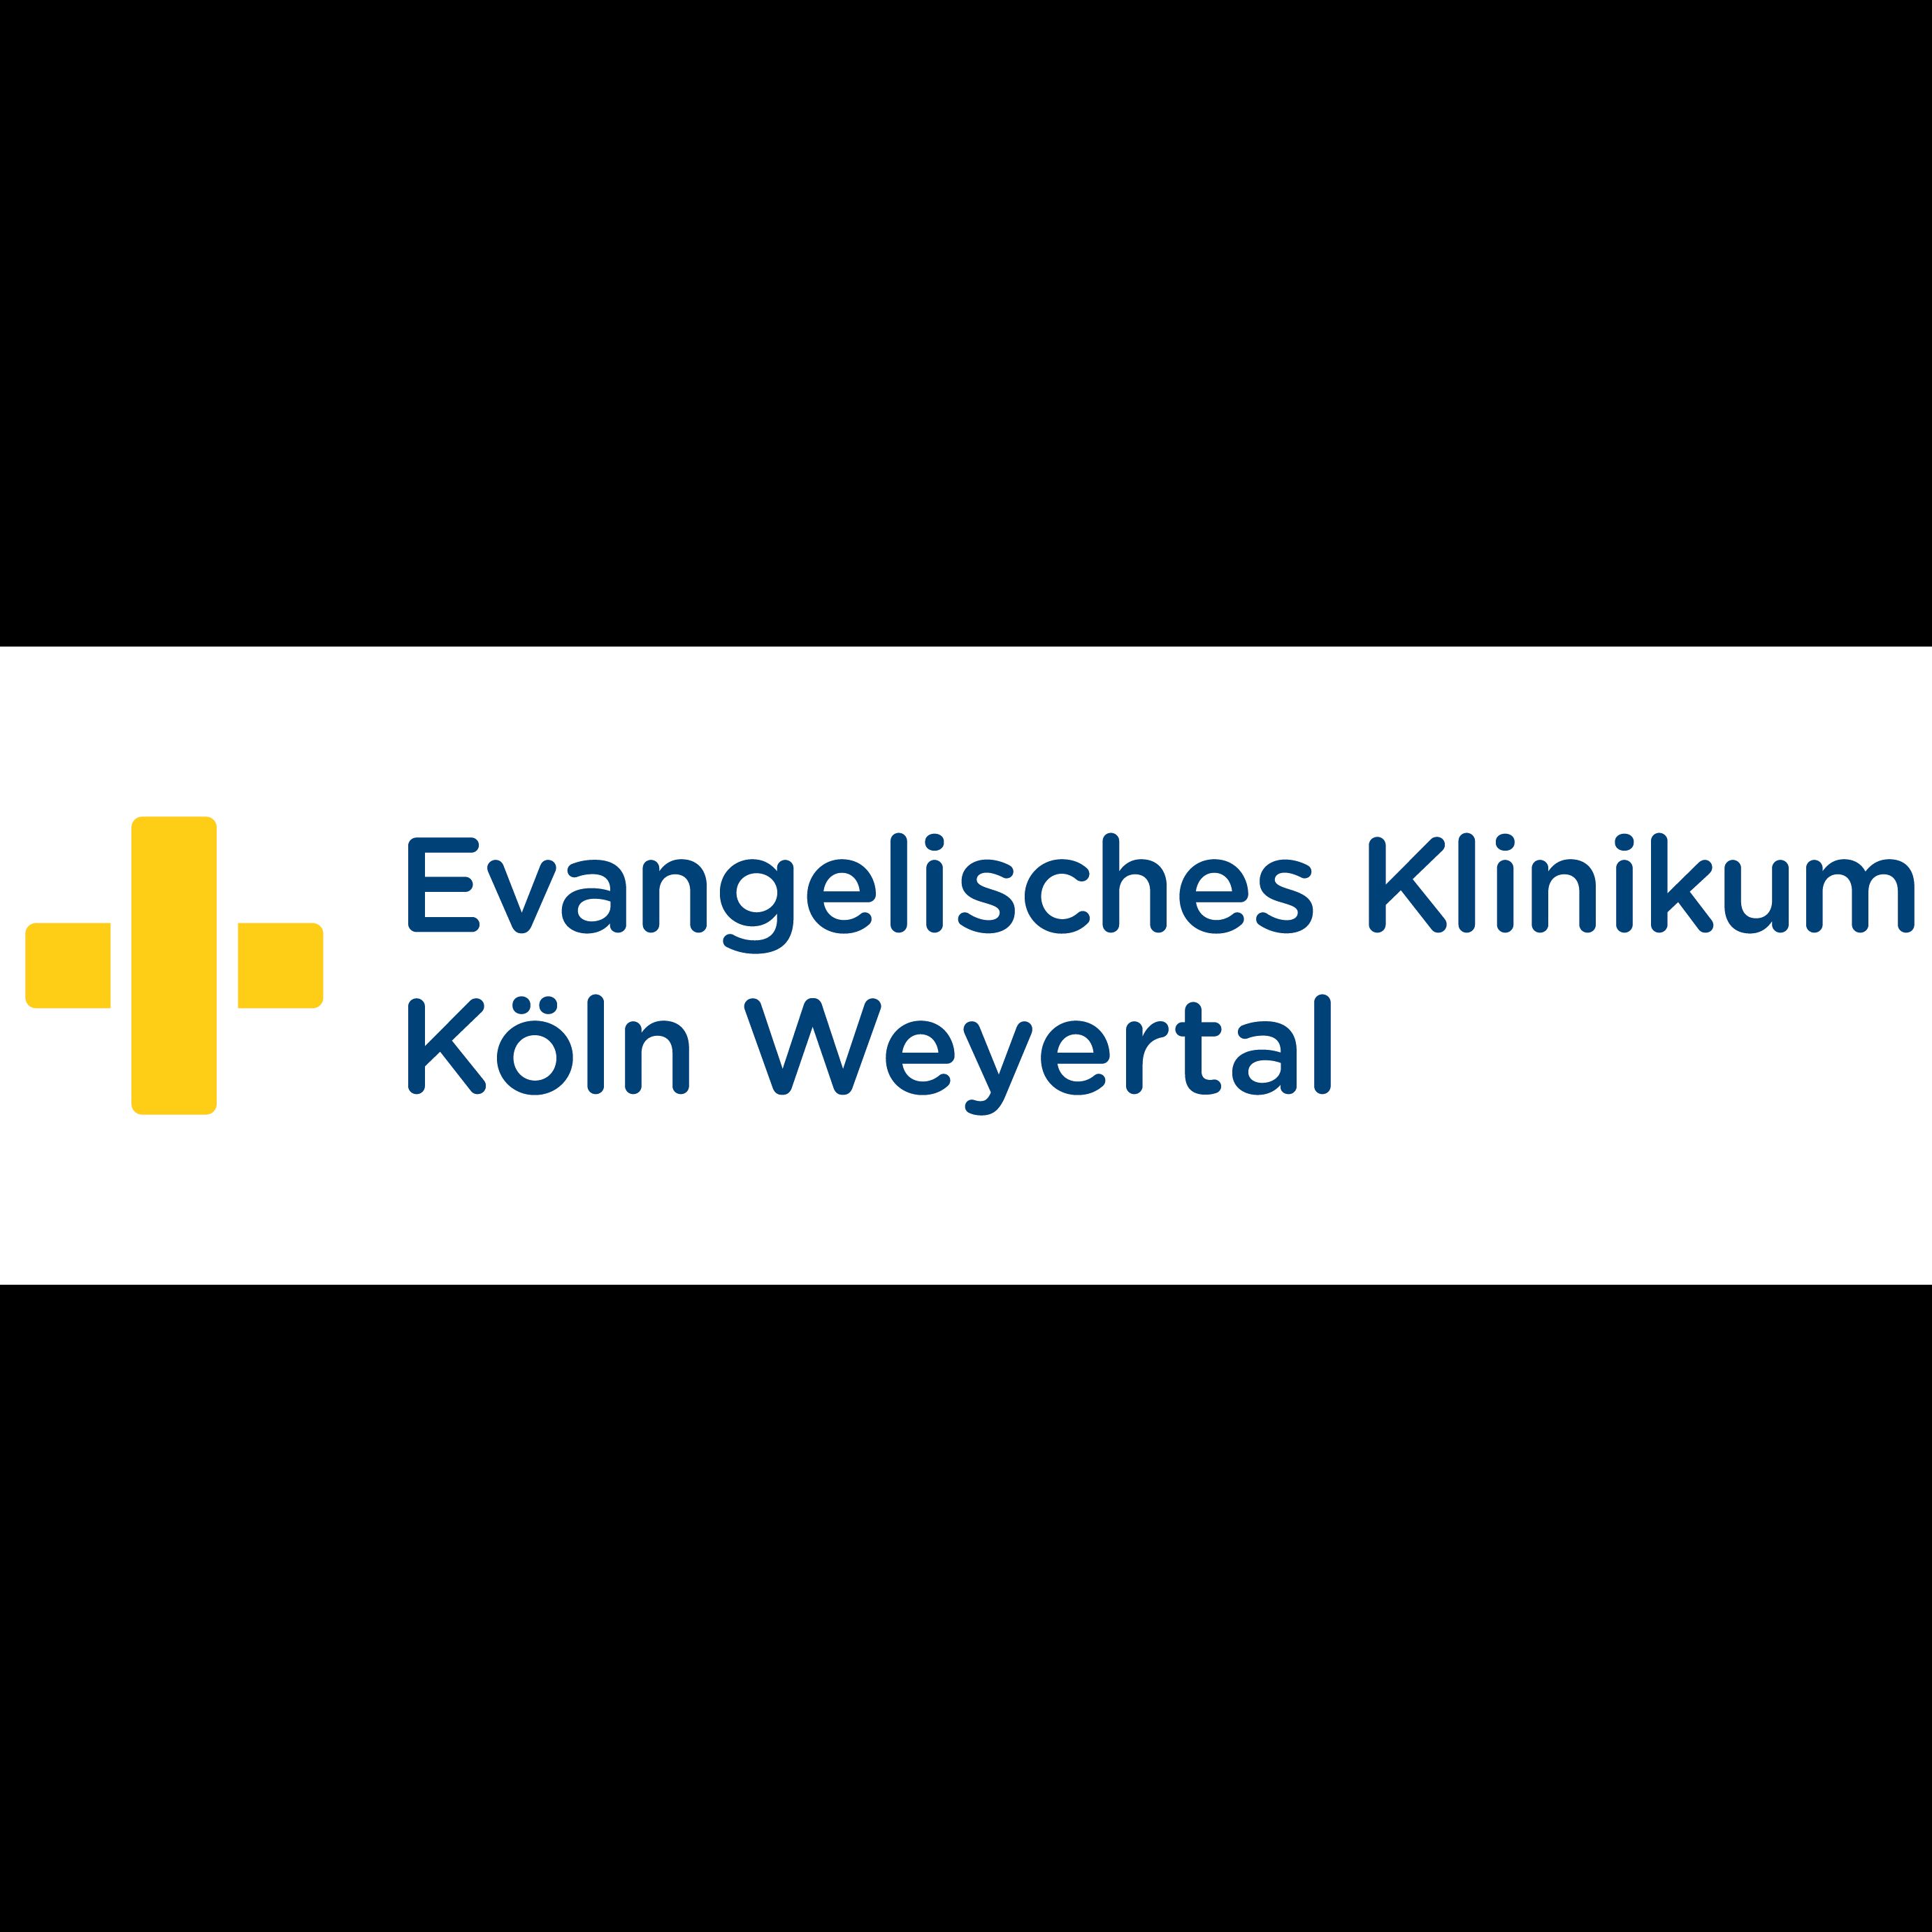 Evangelisches Klinikum Köln Weyertal